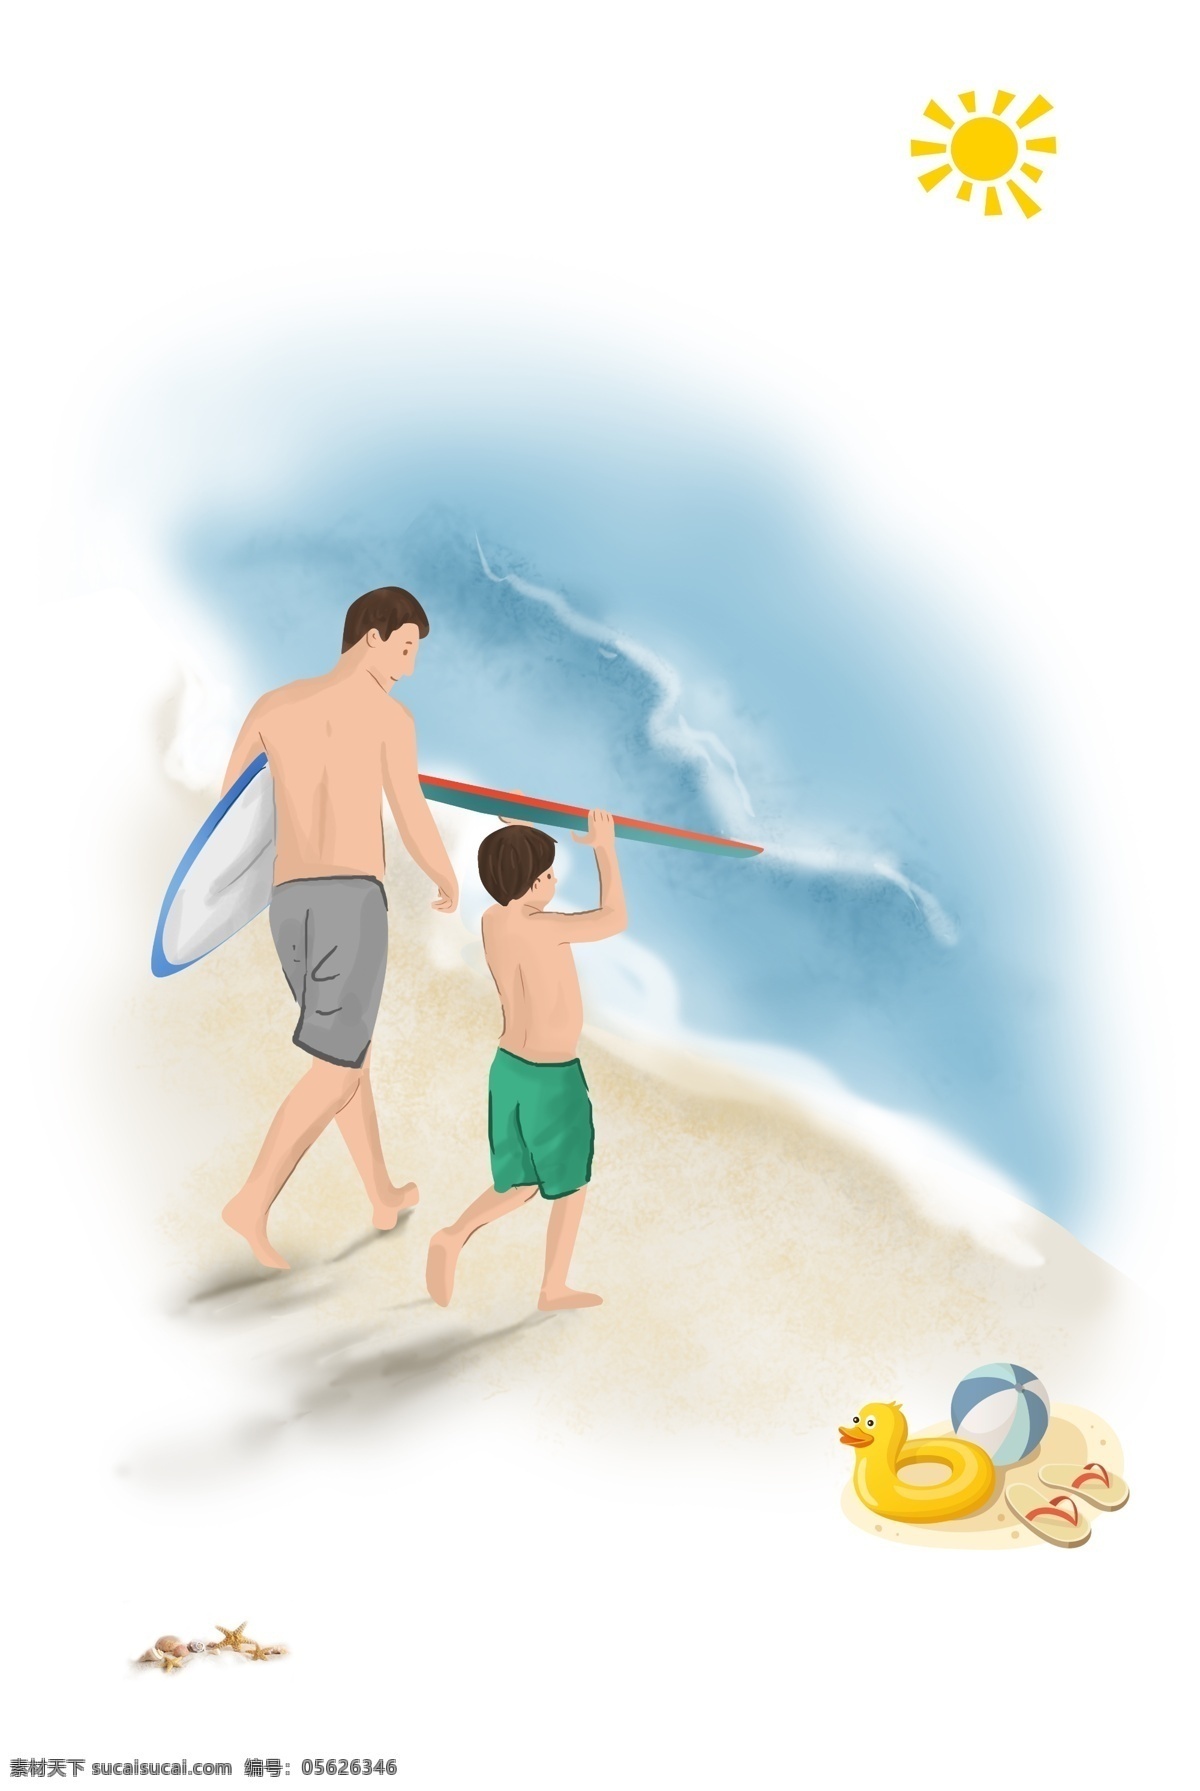 海边 休闲度假 亲子 旅游 卡通 海报 背景 矢量 海岛 沙滩 大海 太阳 休闲 冲浪 开心